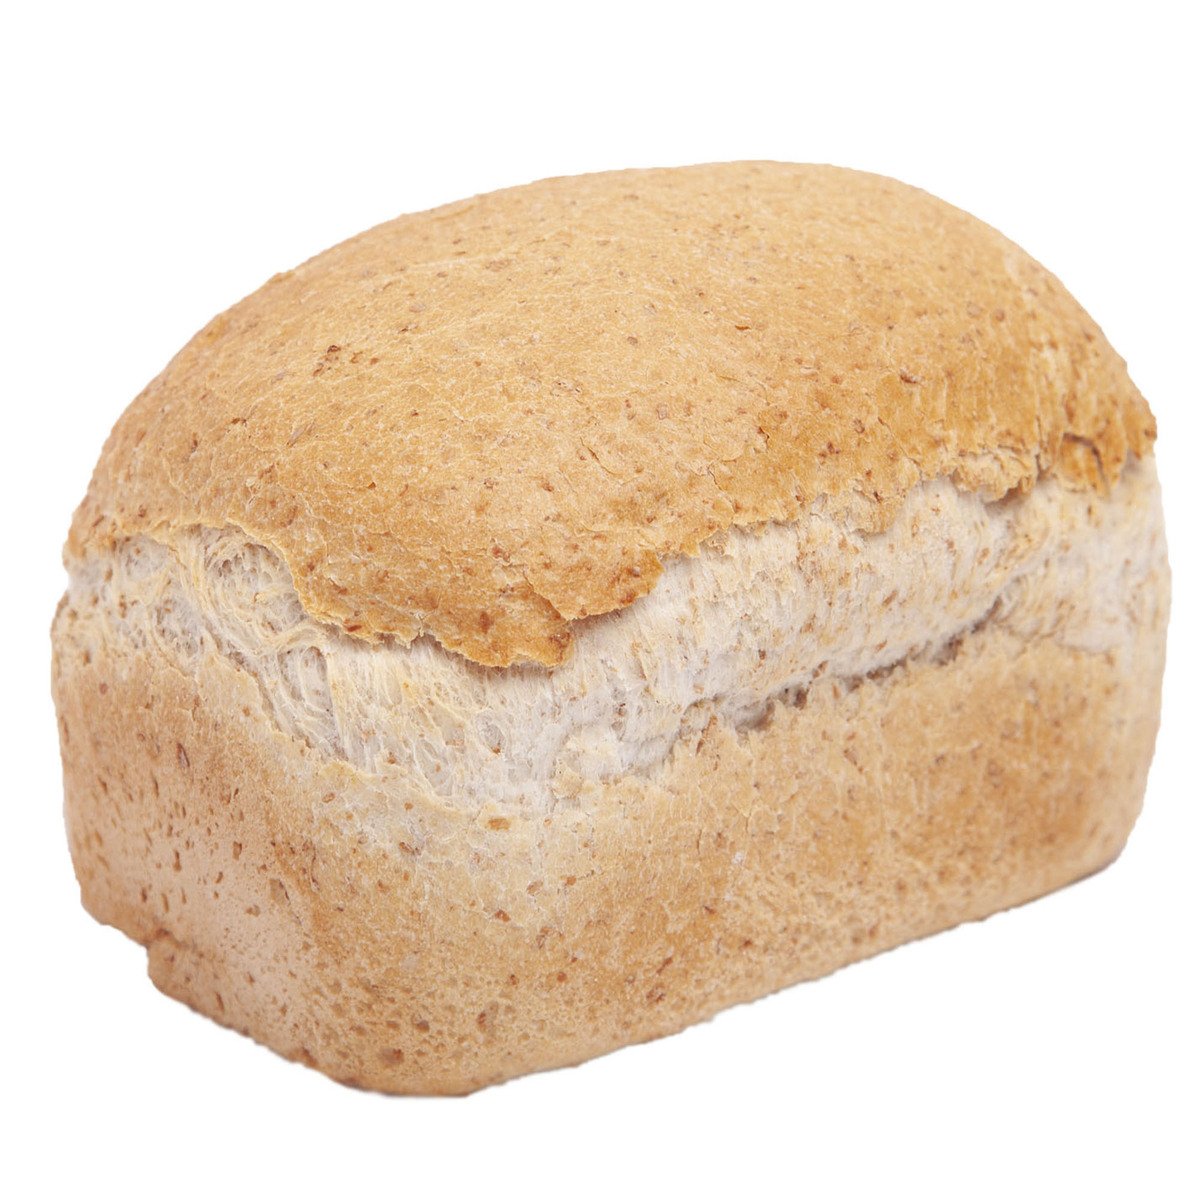 خبز عضوي مصنوع من الحبوب الكاملة قطعة واحدة